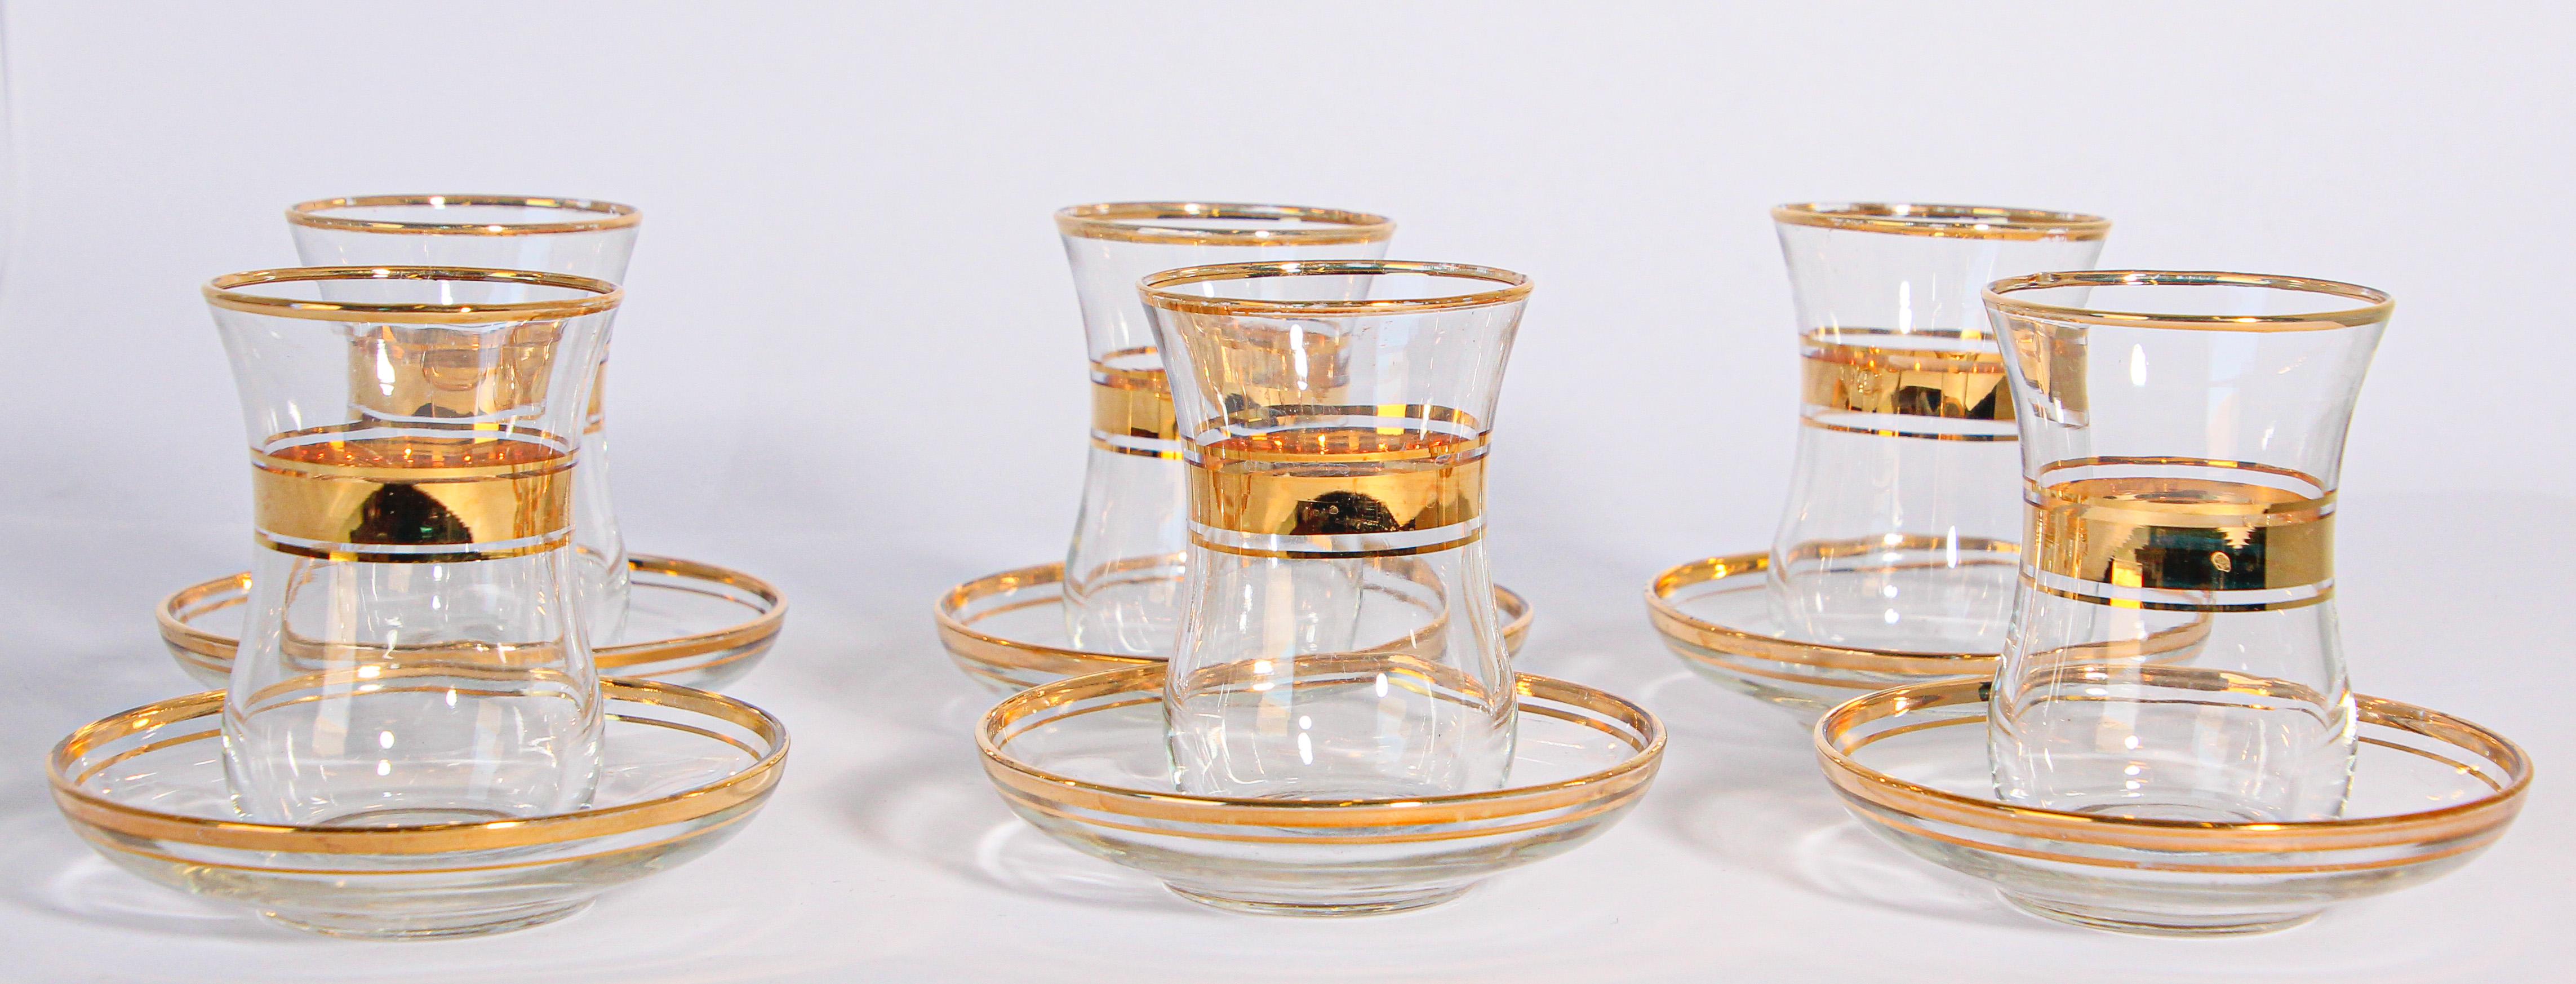 Set aus sechs türkischen Teegläsern mit goldenem Relief.
Set aus mundgeblasenem Glas mit Tasse und Untertassen mit erhabenen, vergoldeten Motiven.
Die Form der Untertassen kann auch separat als kleine Beilagen- oder Saucenschale verwendet